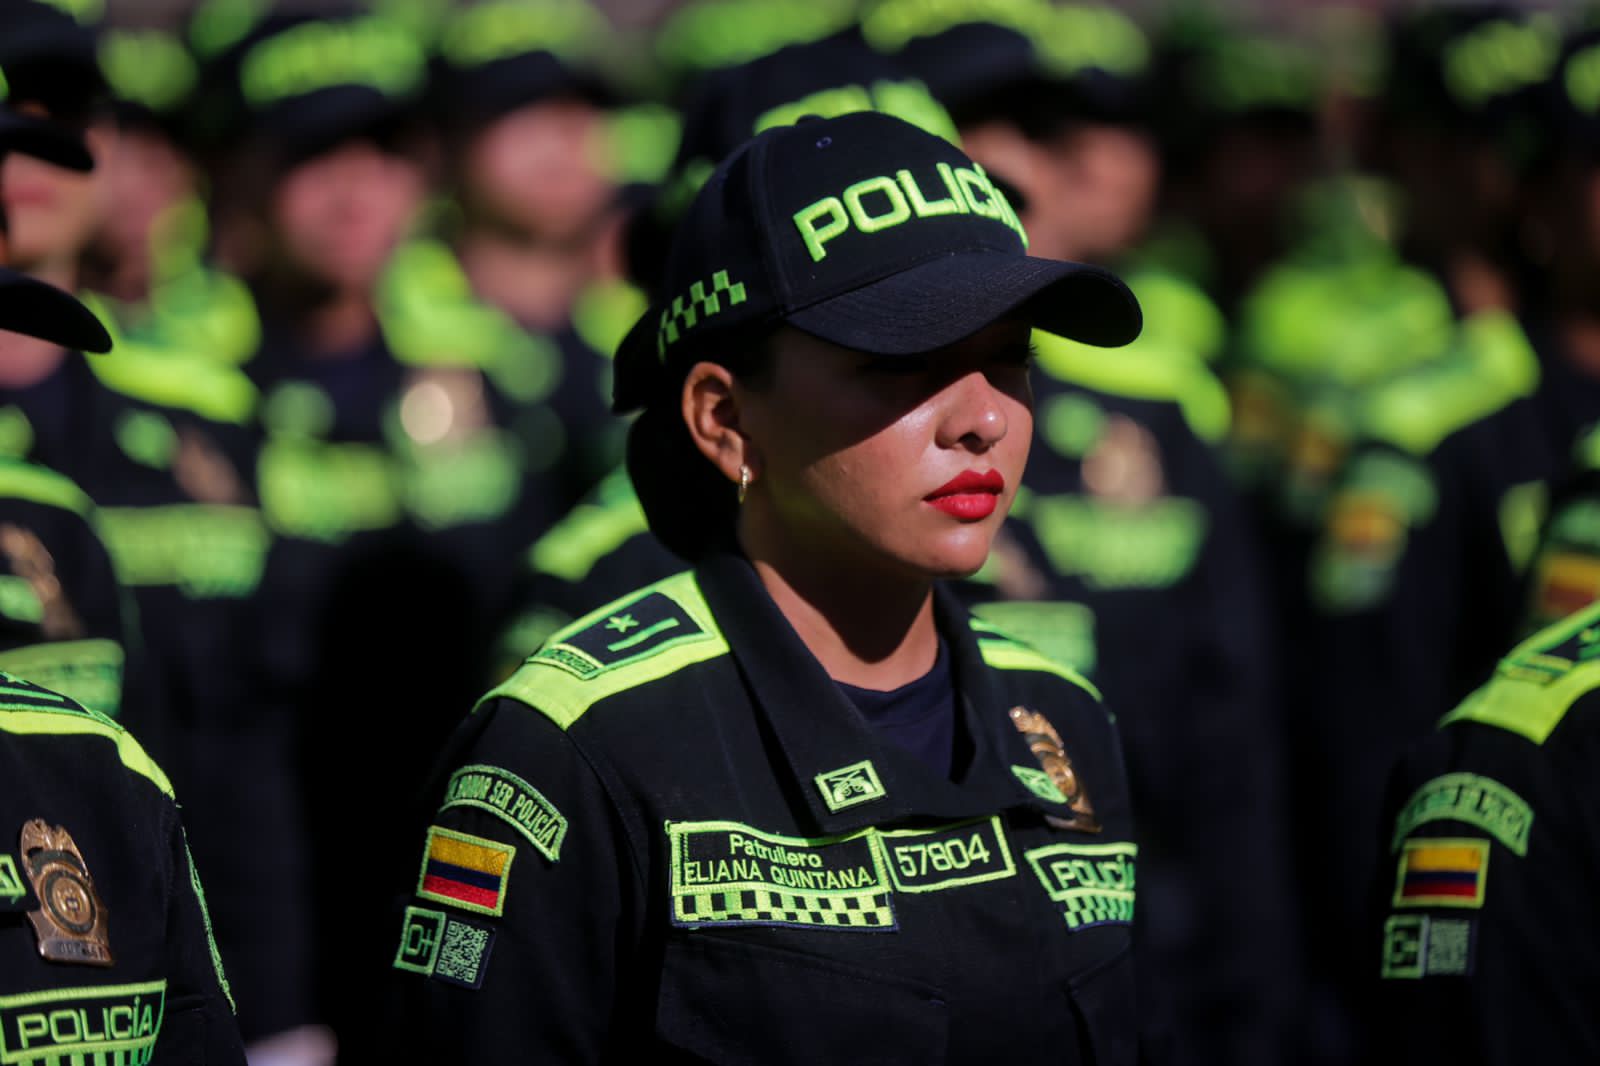 Para esta Navidad 1.500 policías reforzarán la seguridad en Bogotá La alcaldesa, Claudia López, anunció este viernes que 1.500 policías, recién graduados, llegarán a reforzar la seguridad de Bogotá, en especial de Transmilenio.